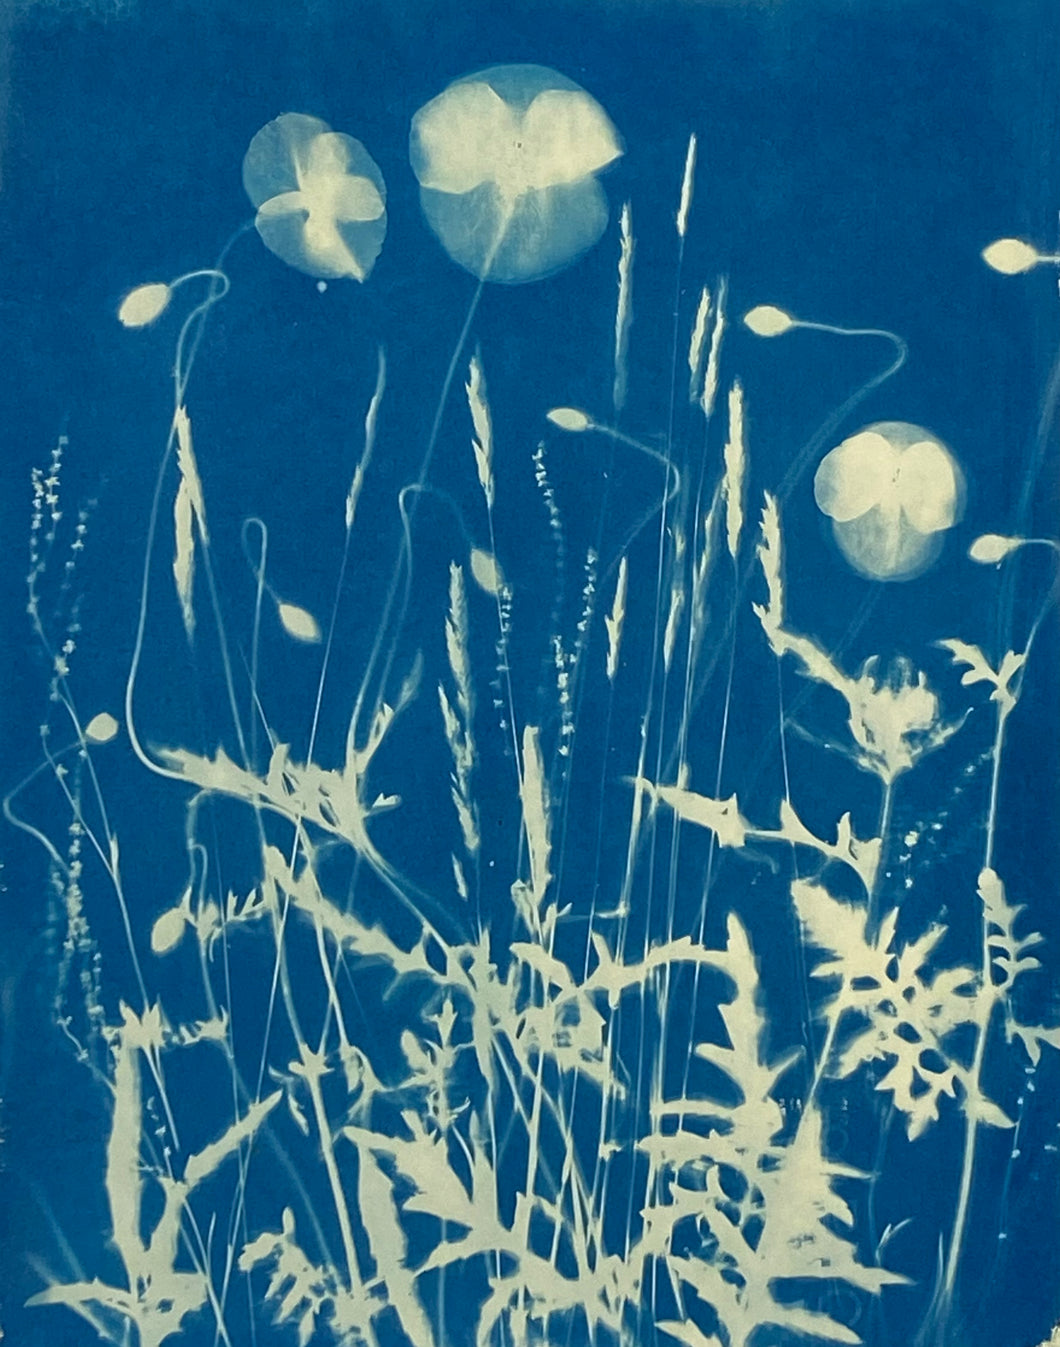 Photogramme de cyanotype 'Wild Poppies'